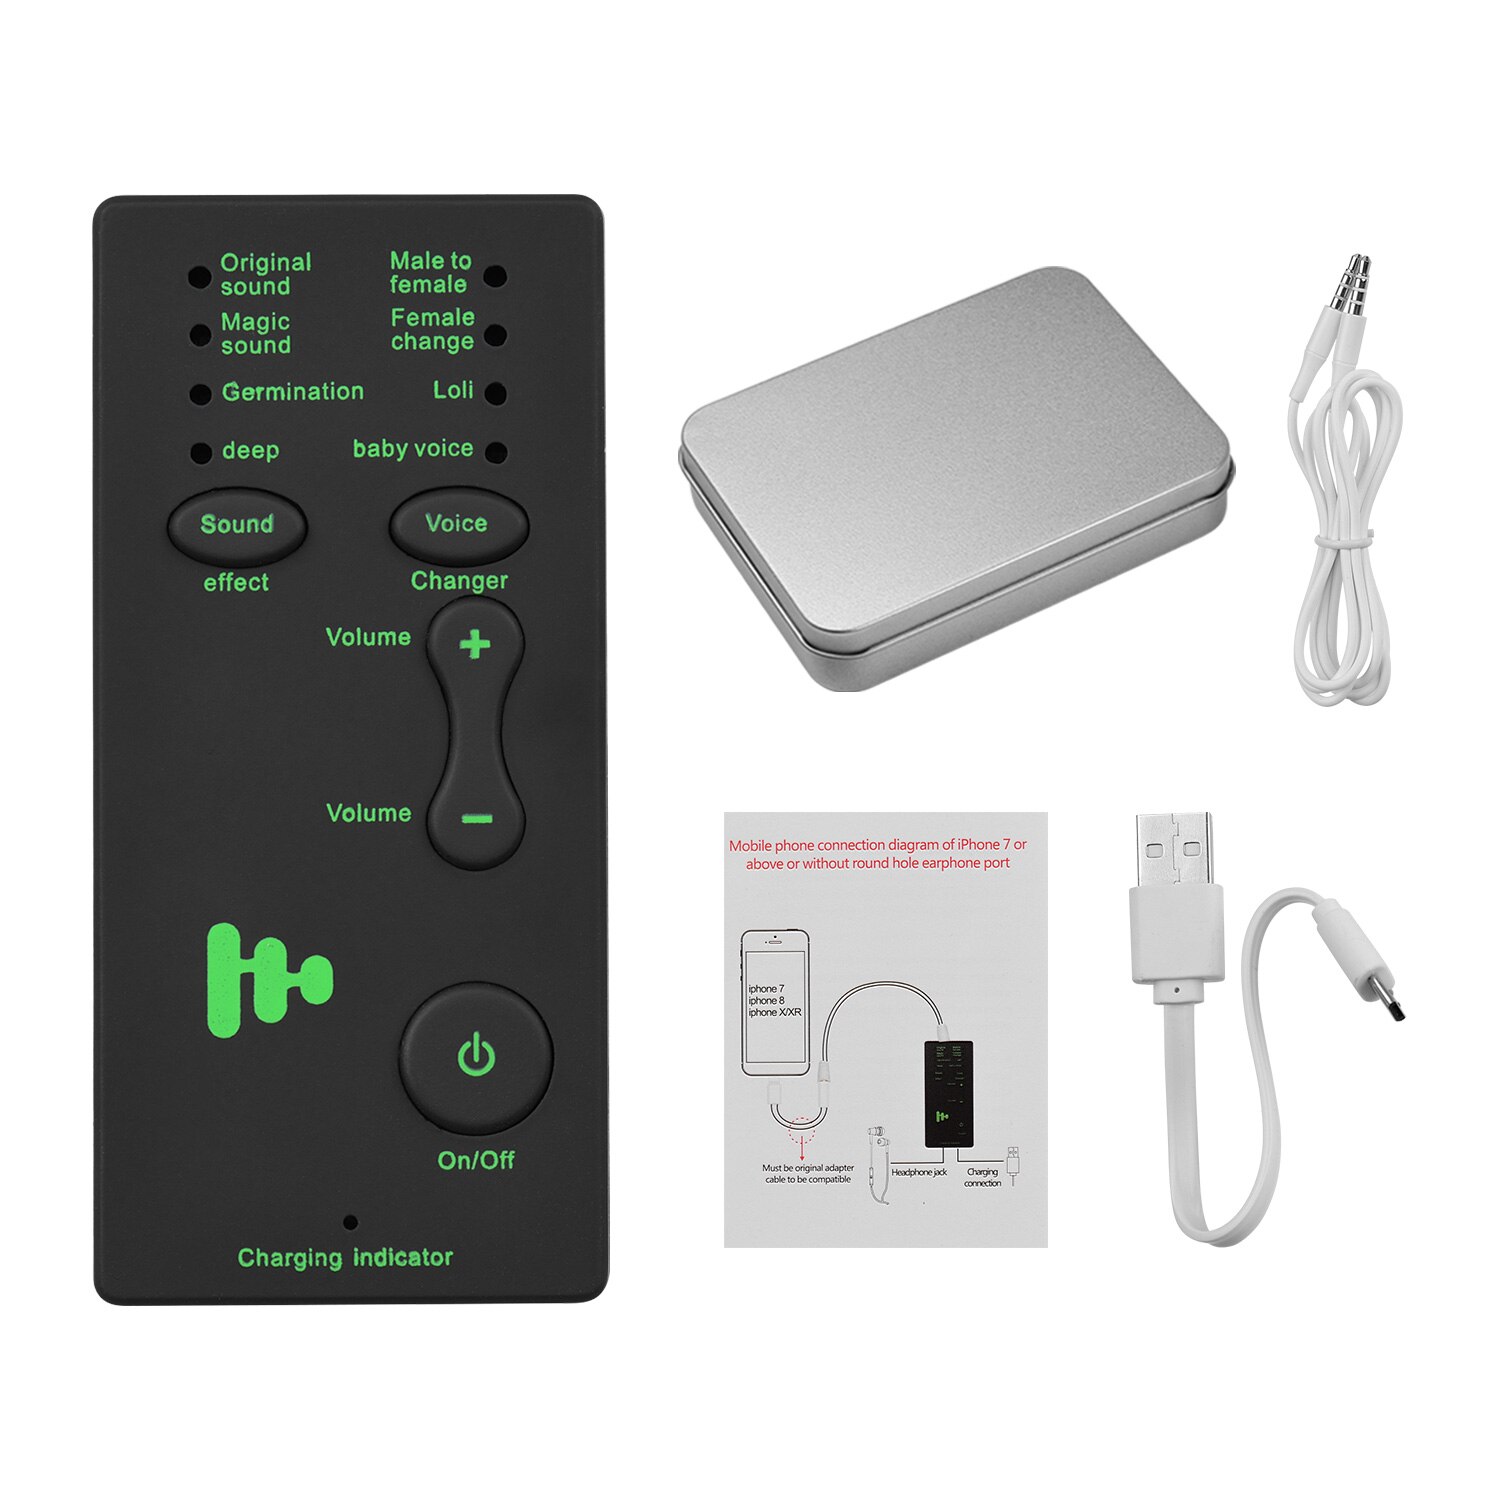 Soundcard M1 Chuyển Đổi Âm Thanh Với 8 Chế Độ Sử Dụng Cho Điện Thoại, PC, Máy Tính Bảng - Tích Hợp Pin Dung Lượng 400mAh